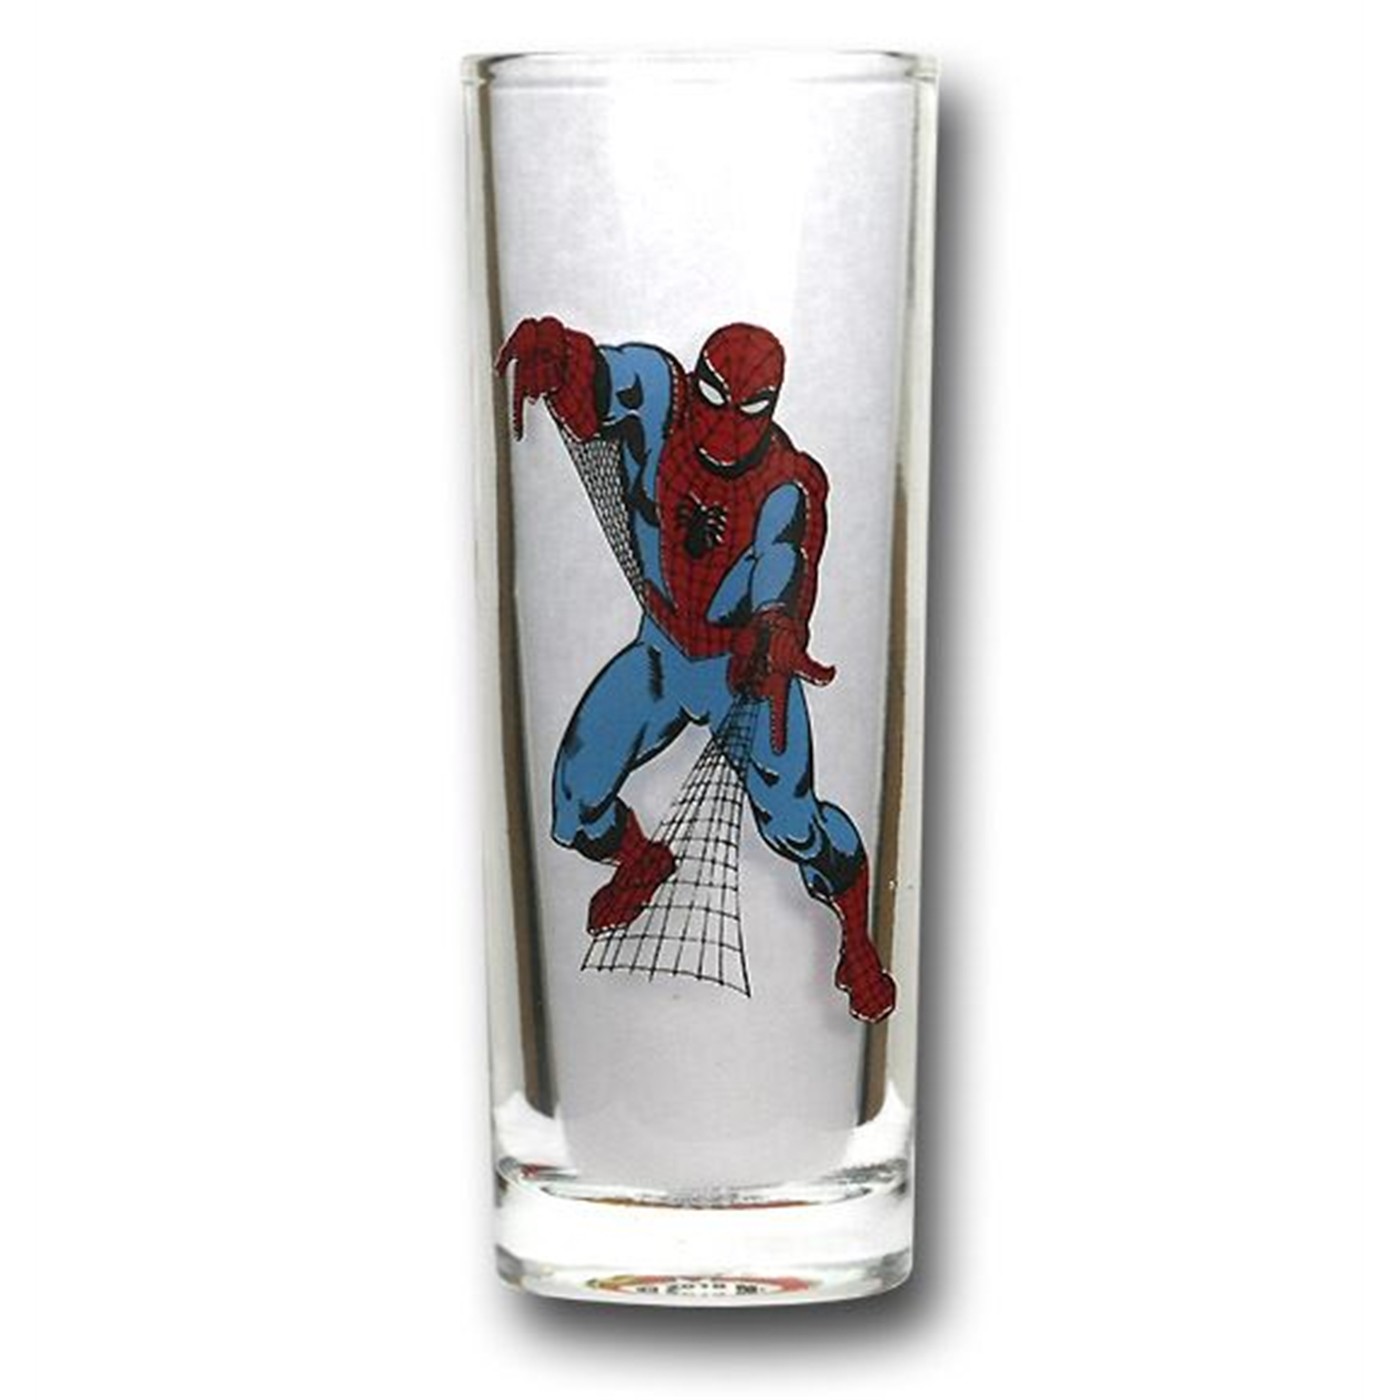 Spider-Man Glass Shooter Set